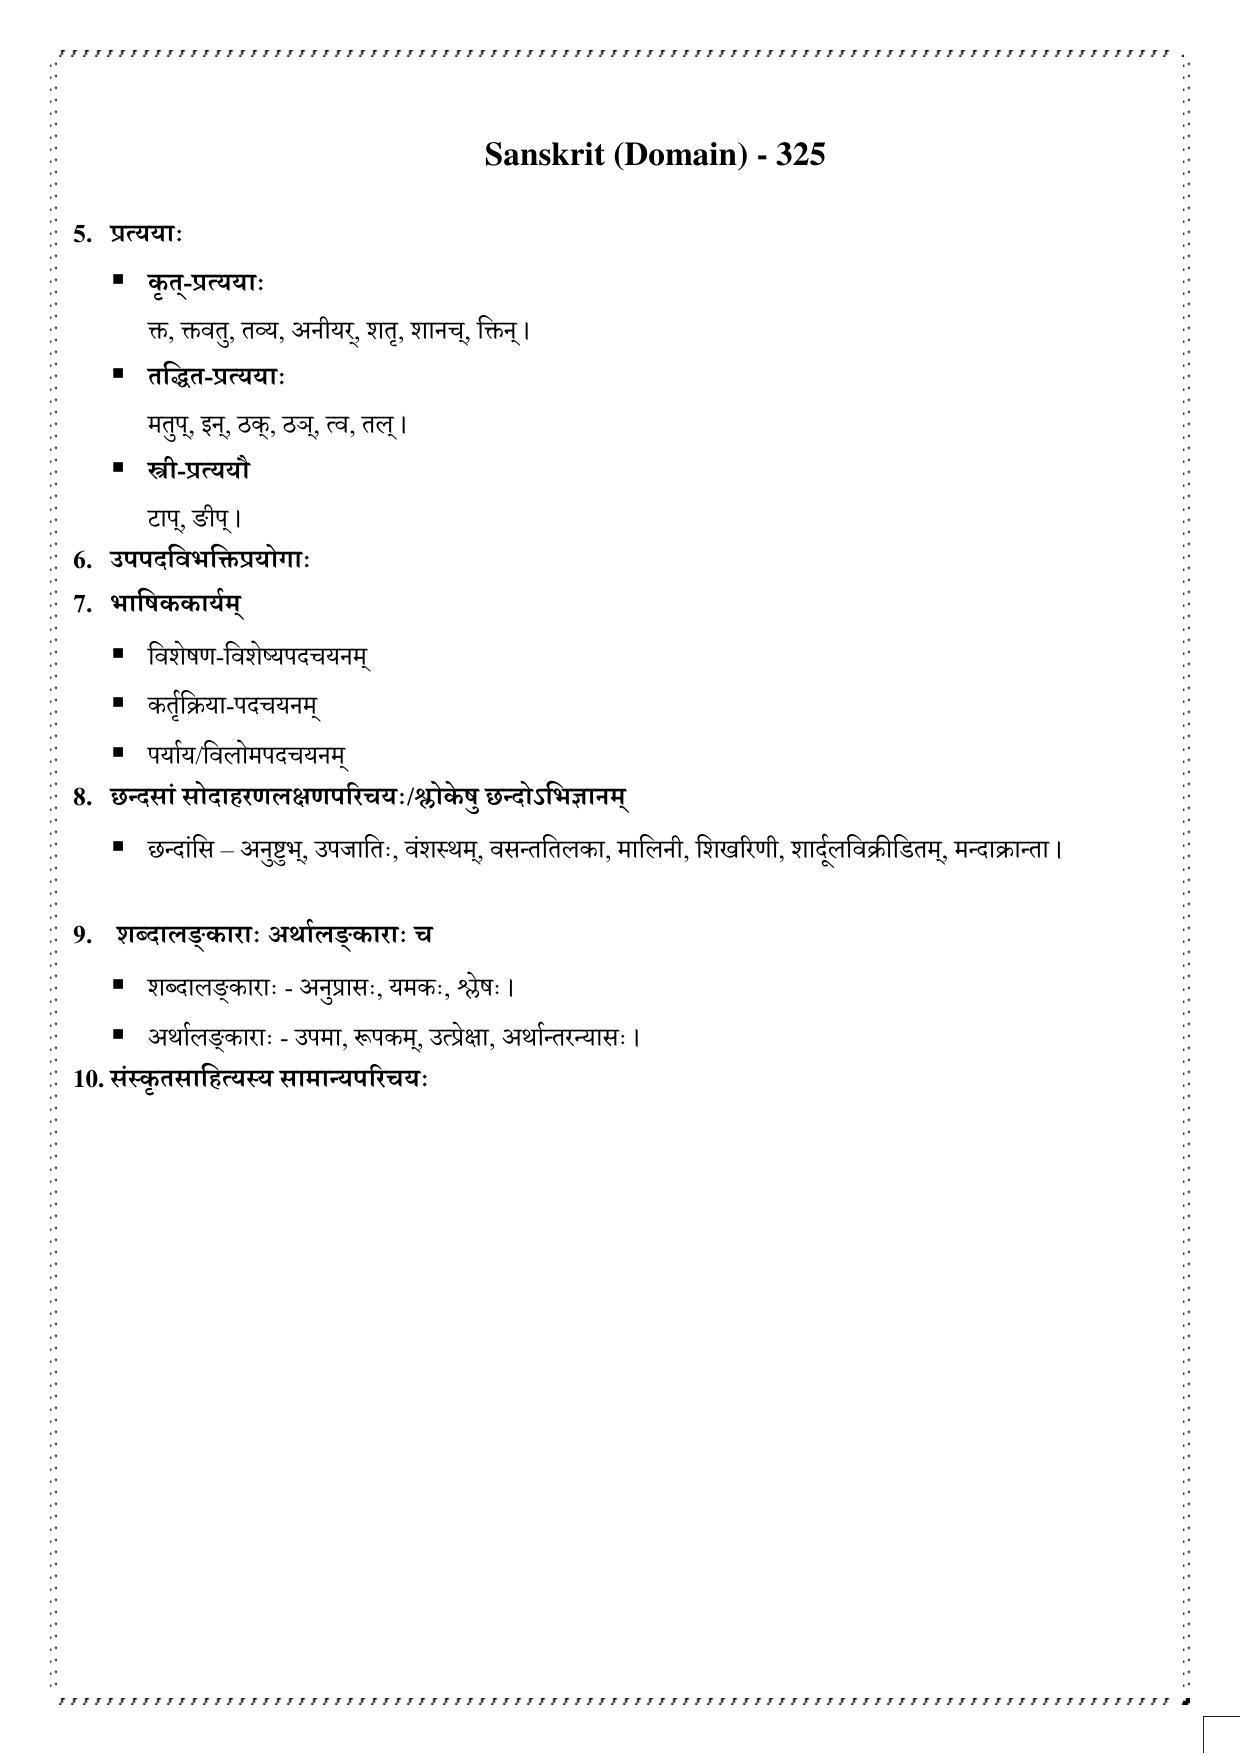 CUET Syllabus for Sanskrit (English) - Page 3